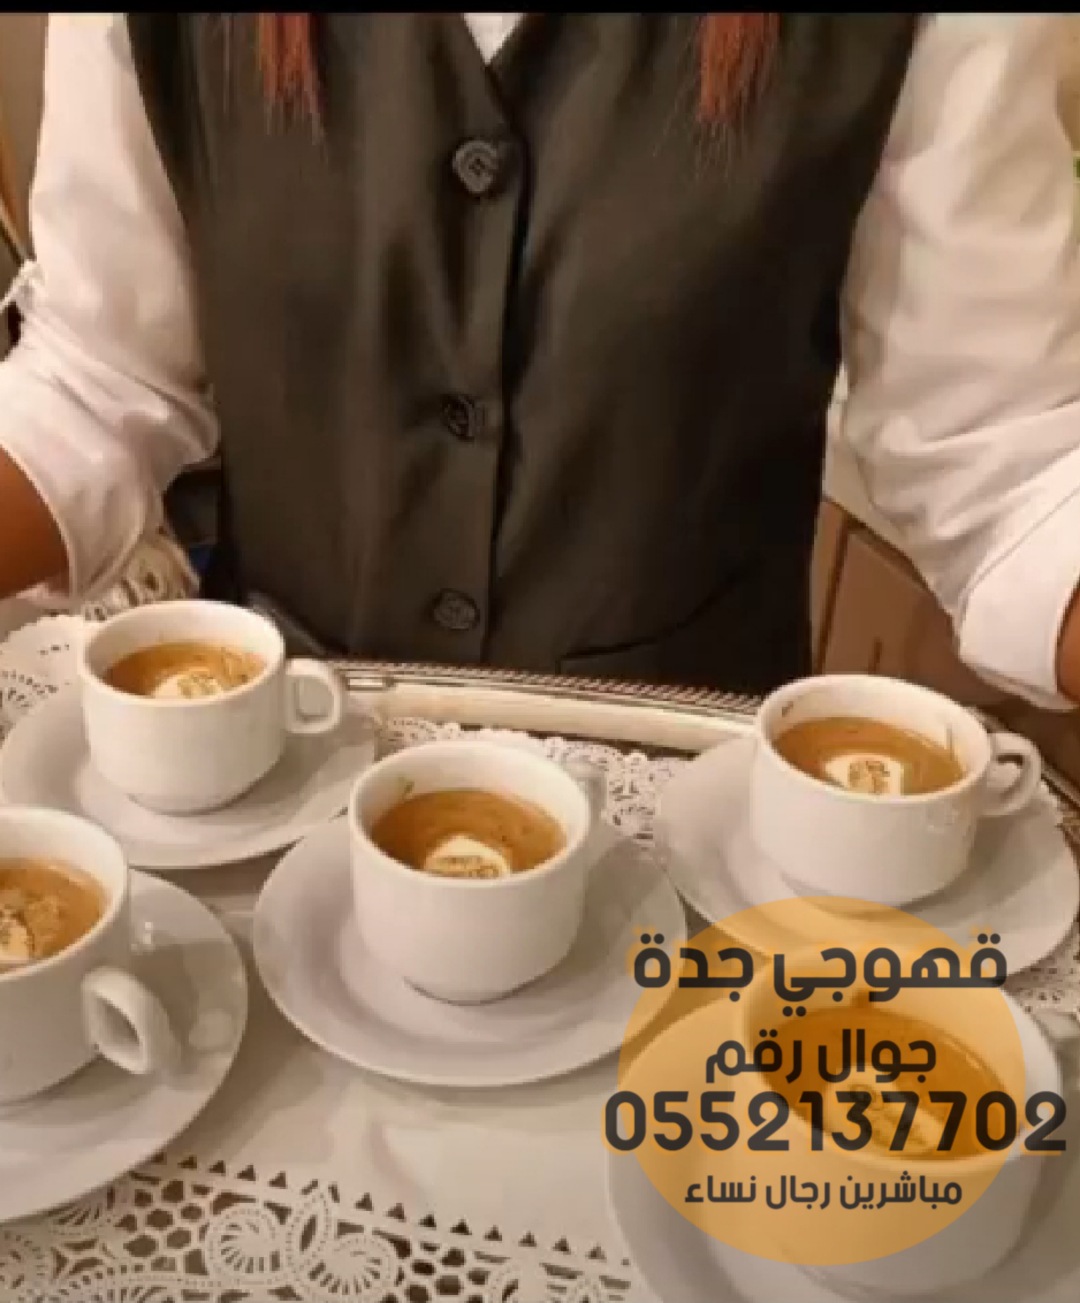 قهوجيين و صبابين القهوة في جدة,0552137702